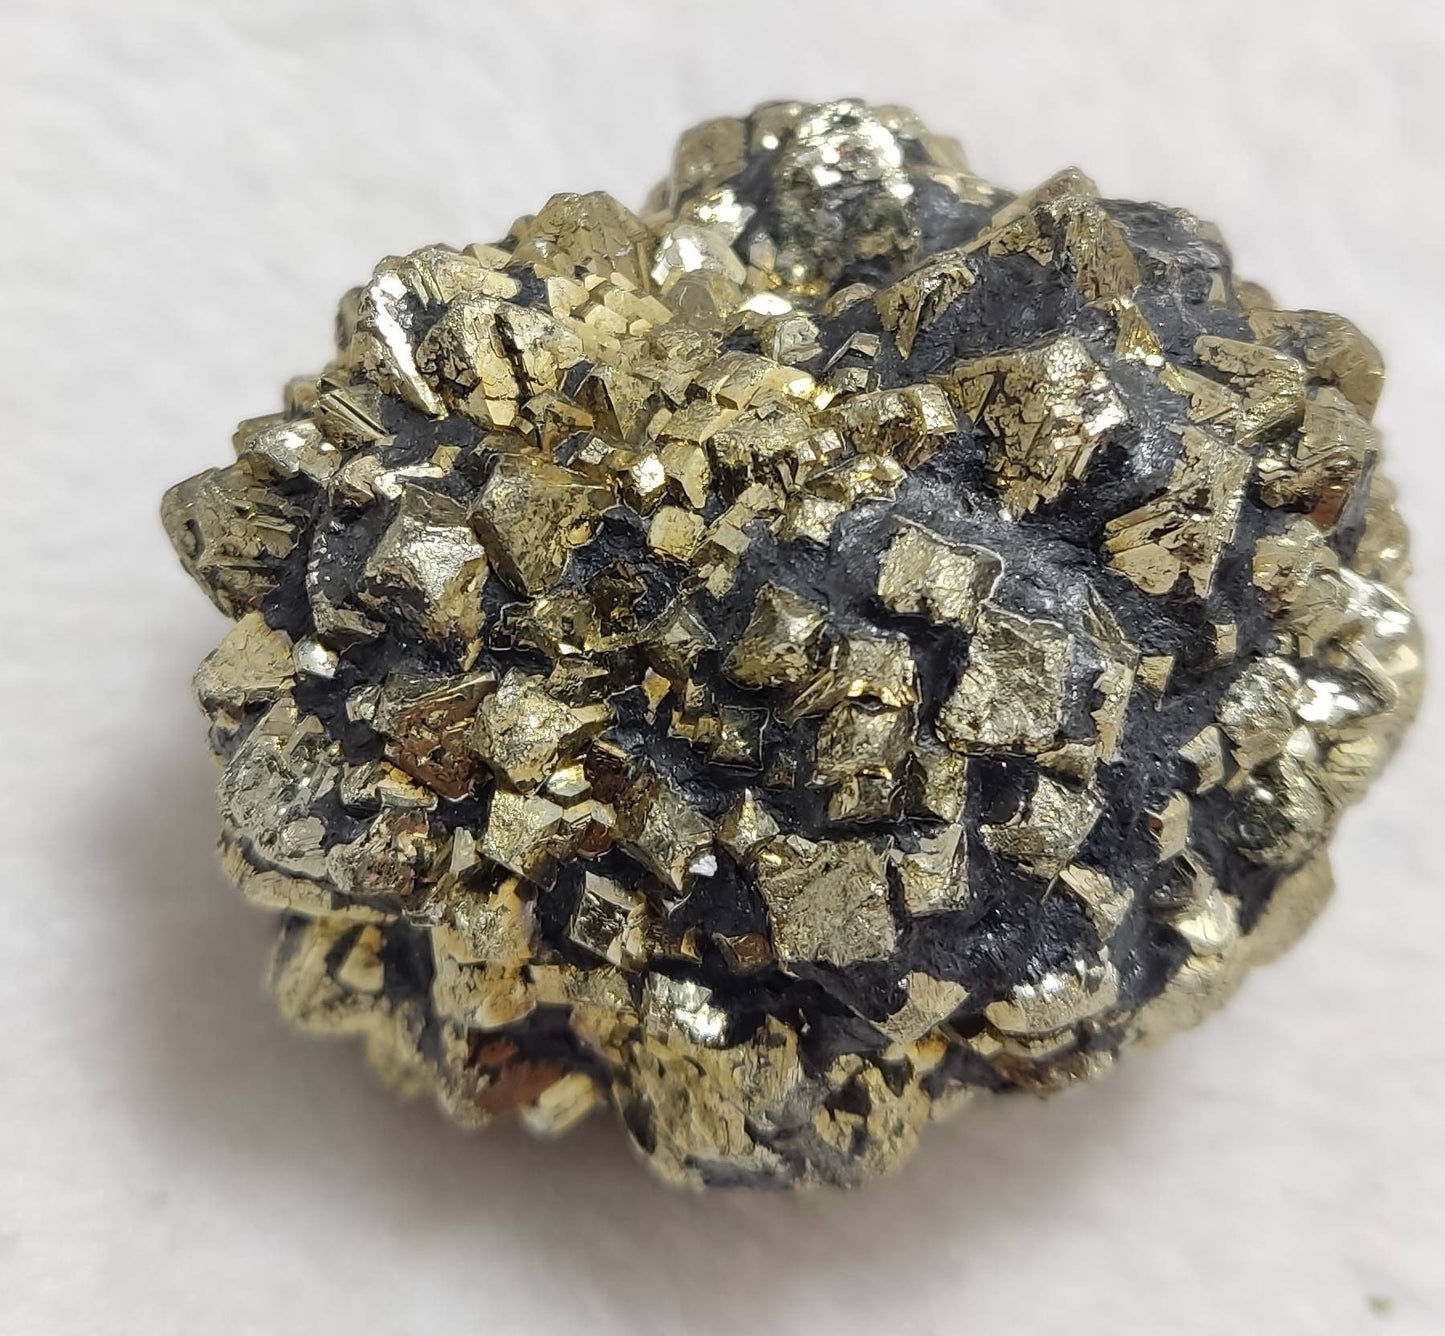 Pyrite/marcasite specimen 227 grams